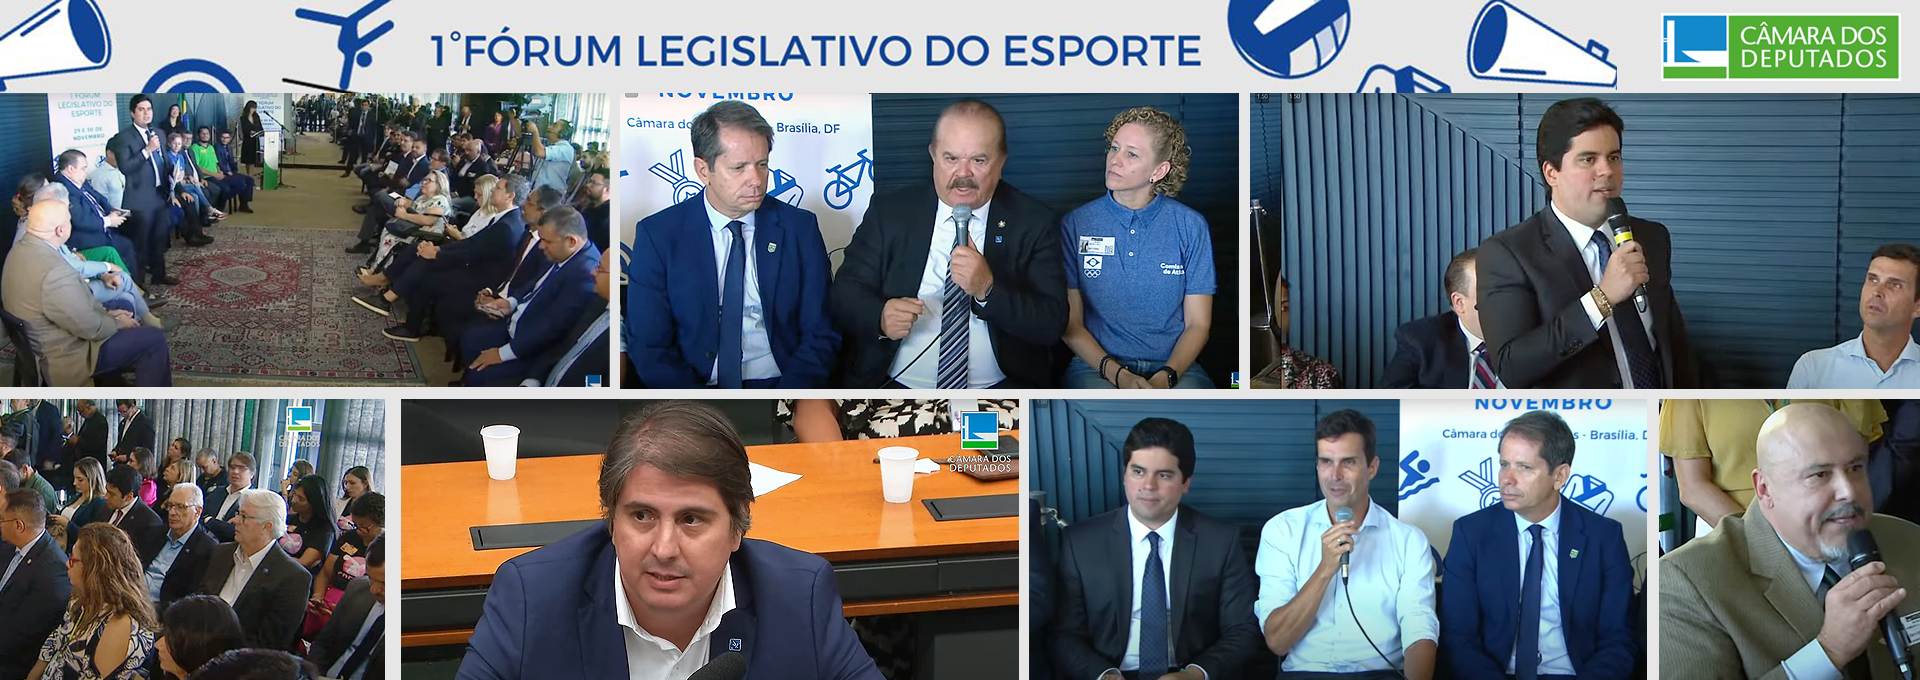 Comitê Brasileiro de Clubes - CBC marca presença no 1º Fórum Legislativo do Esporte 